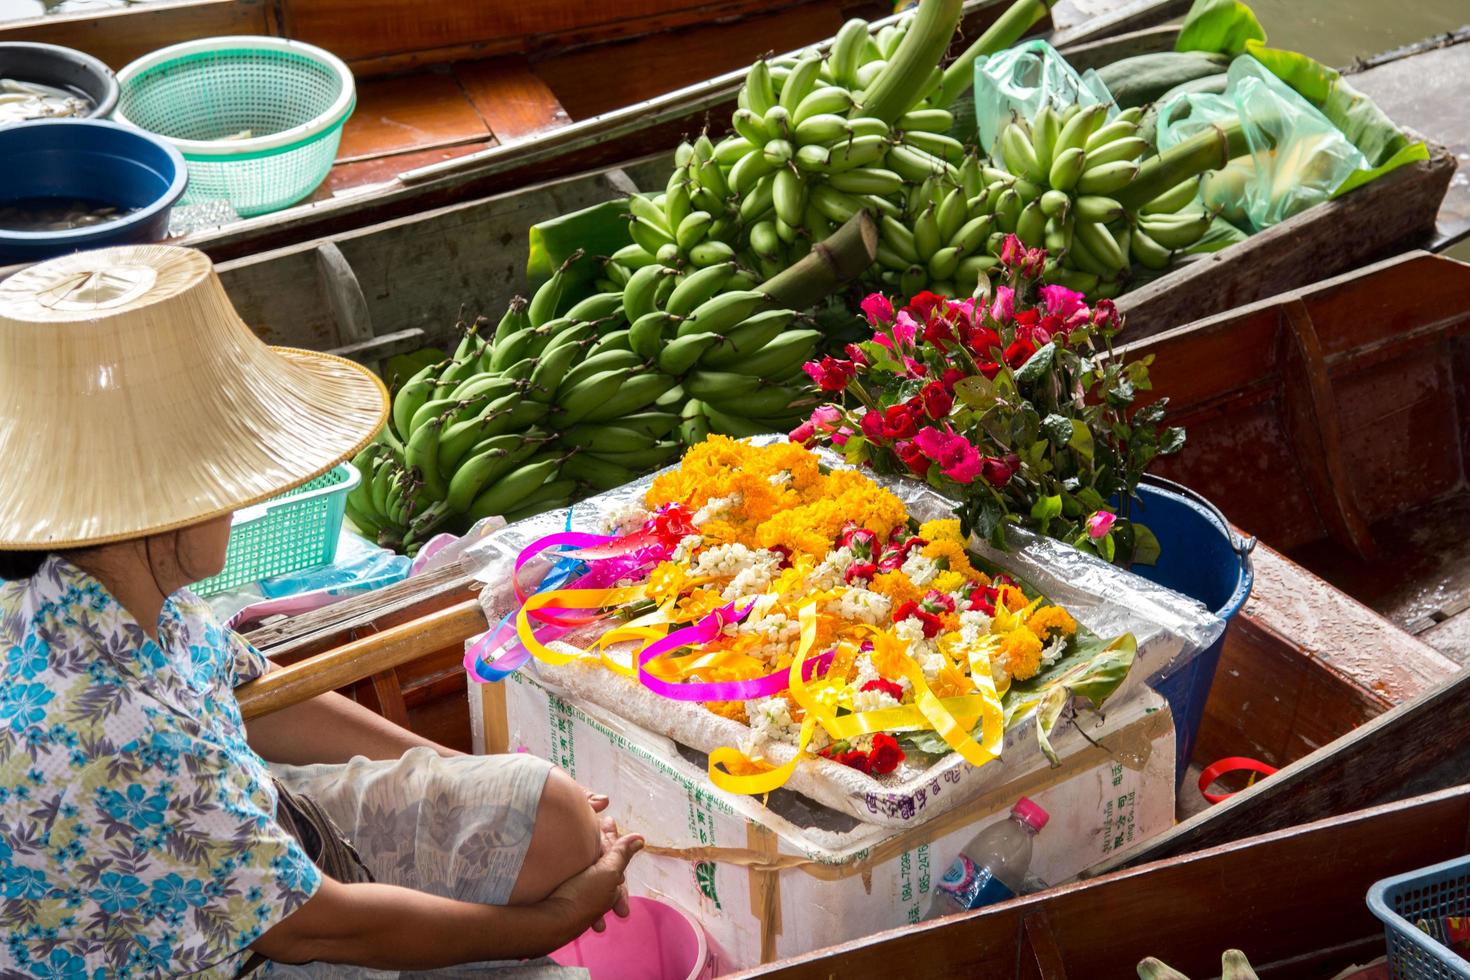 bateaux vente divers des fruits et nourriture à le flottant marché sont populaire touristique attractions avec traditionnel village life-10-8-2014-damnoen Saduak Ratchaburi photo